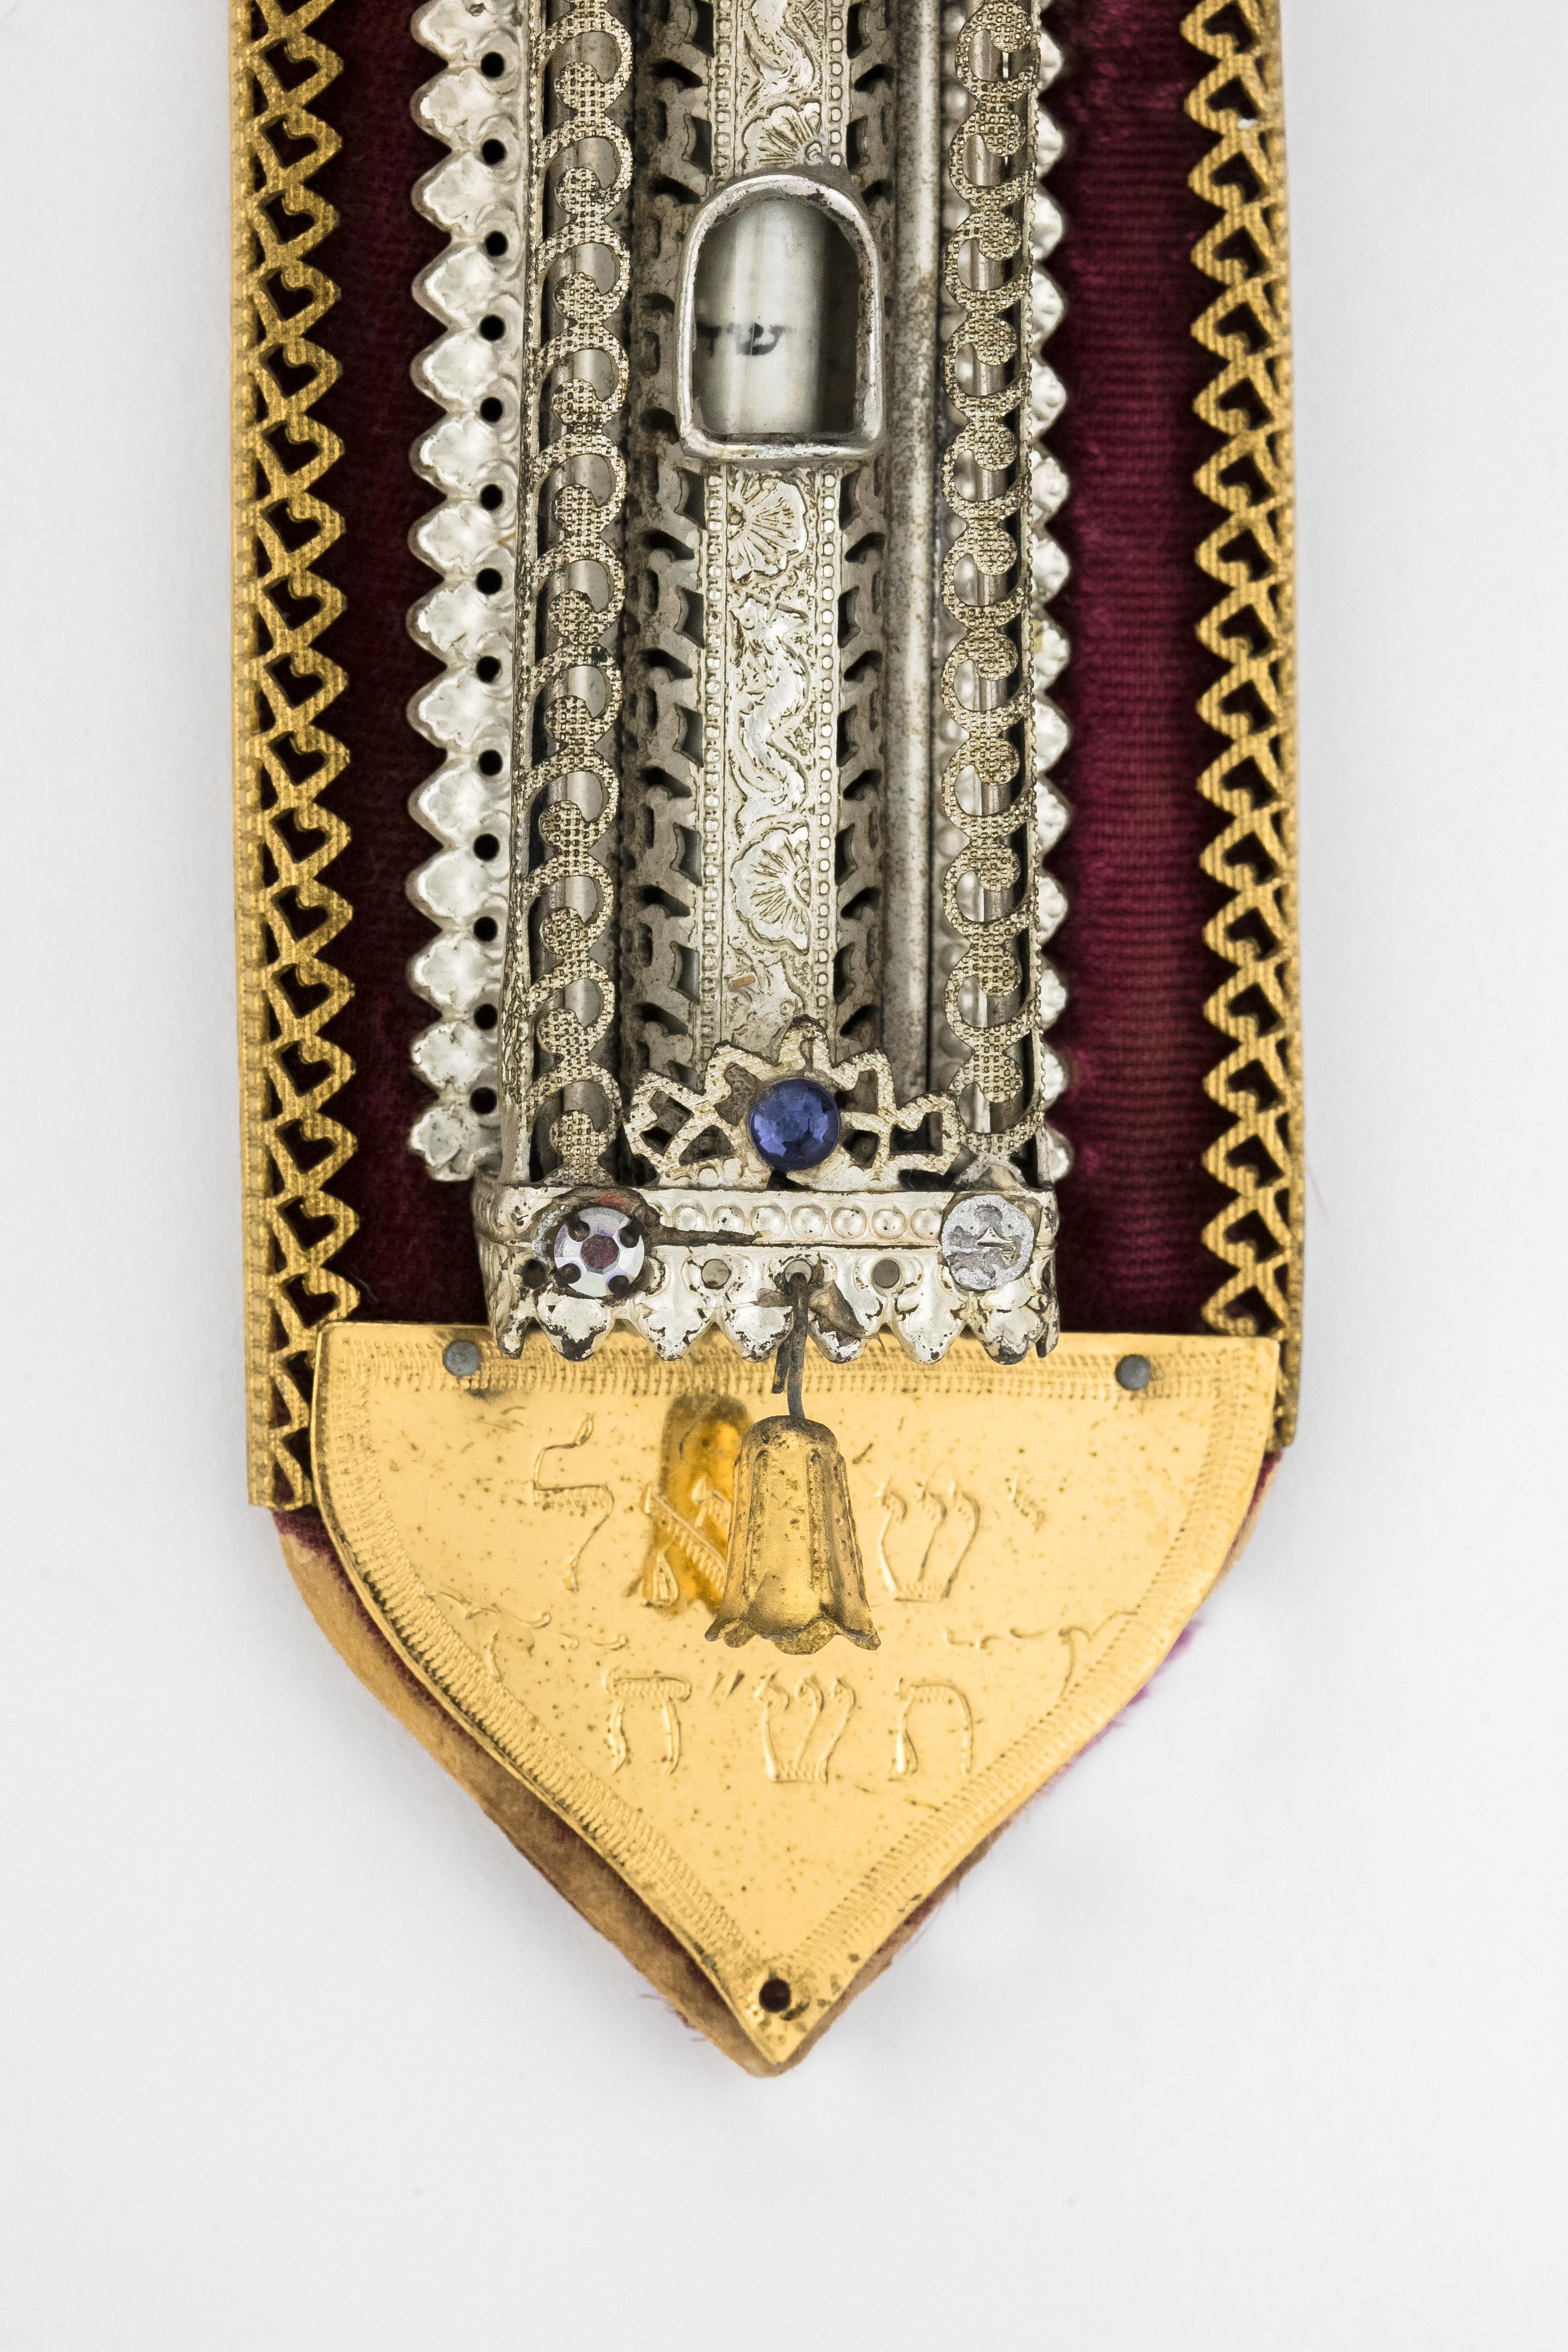 Mézouza israélienne ancienne sur support de velours avec corps argenté orné, et avec dessus et base dorés. Décorée avec du verre coloré et avec une cloche dorée suspendue à la partie inférieure de la Mézouza. 
Gravé en hébreu 